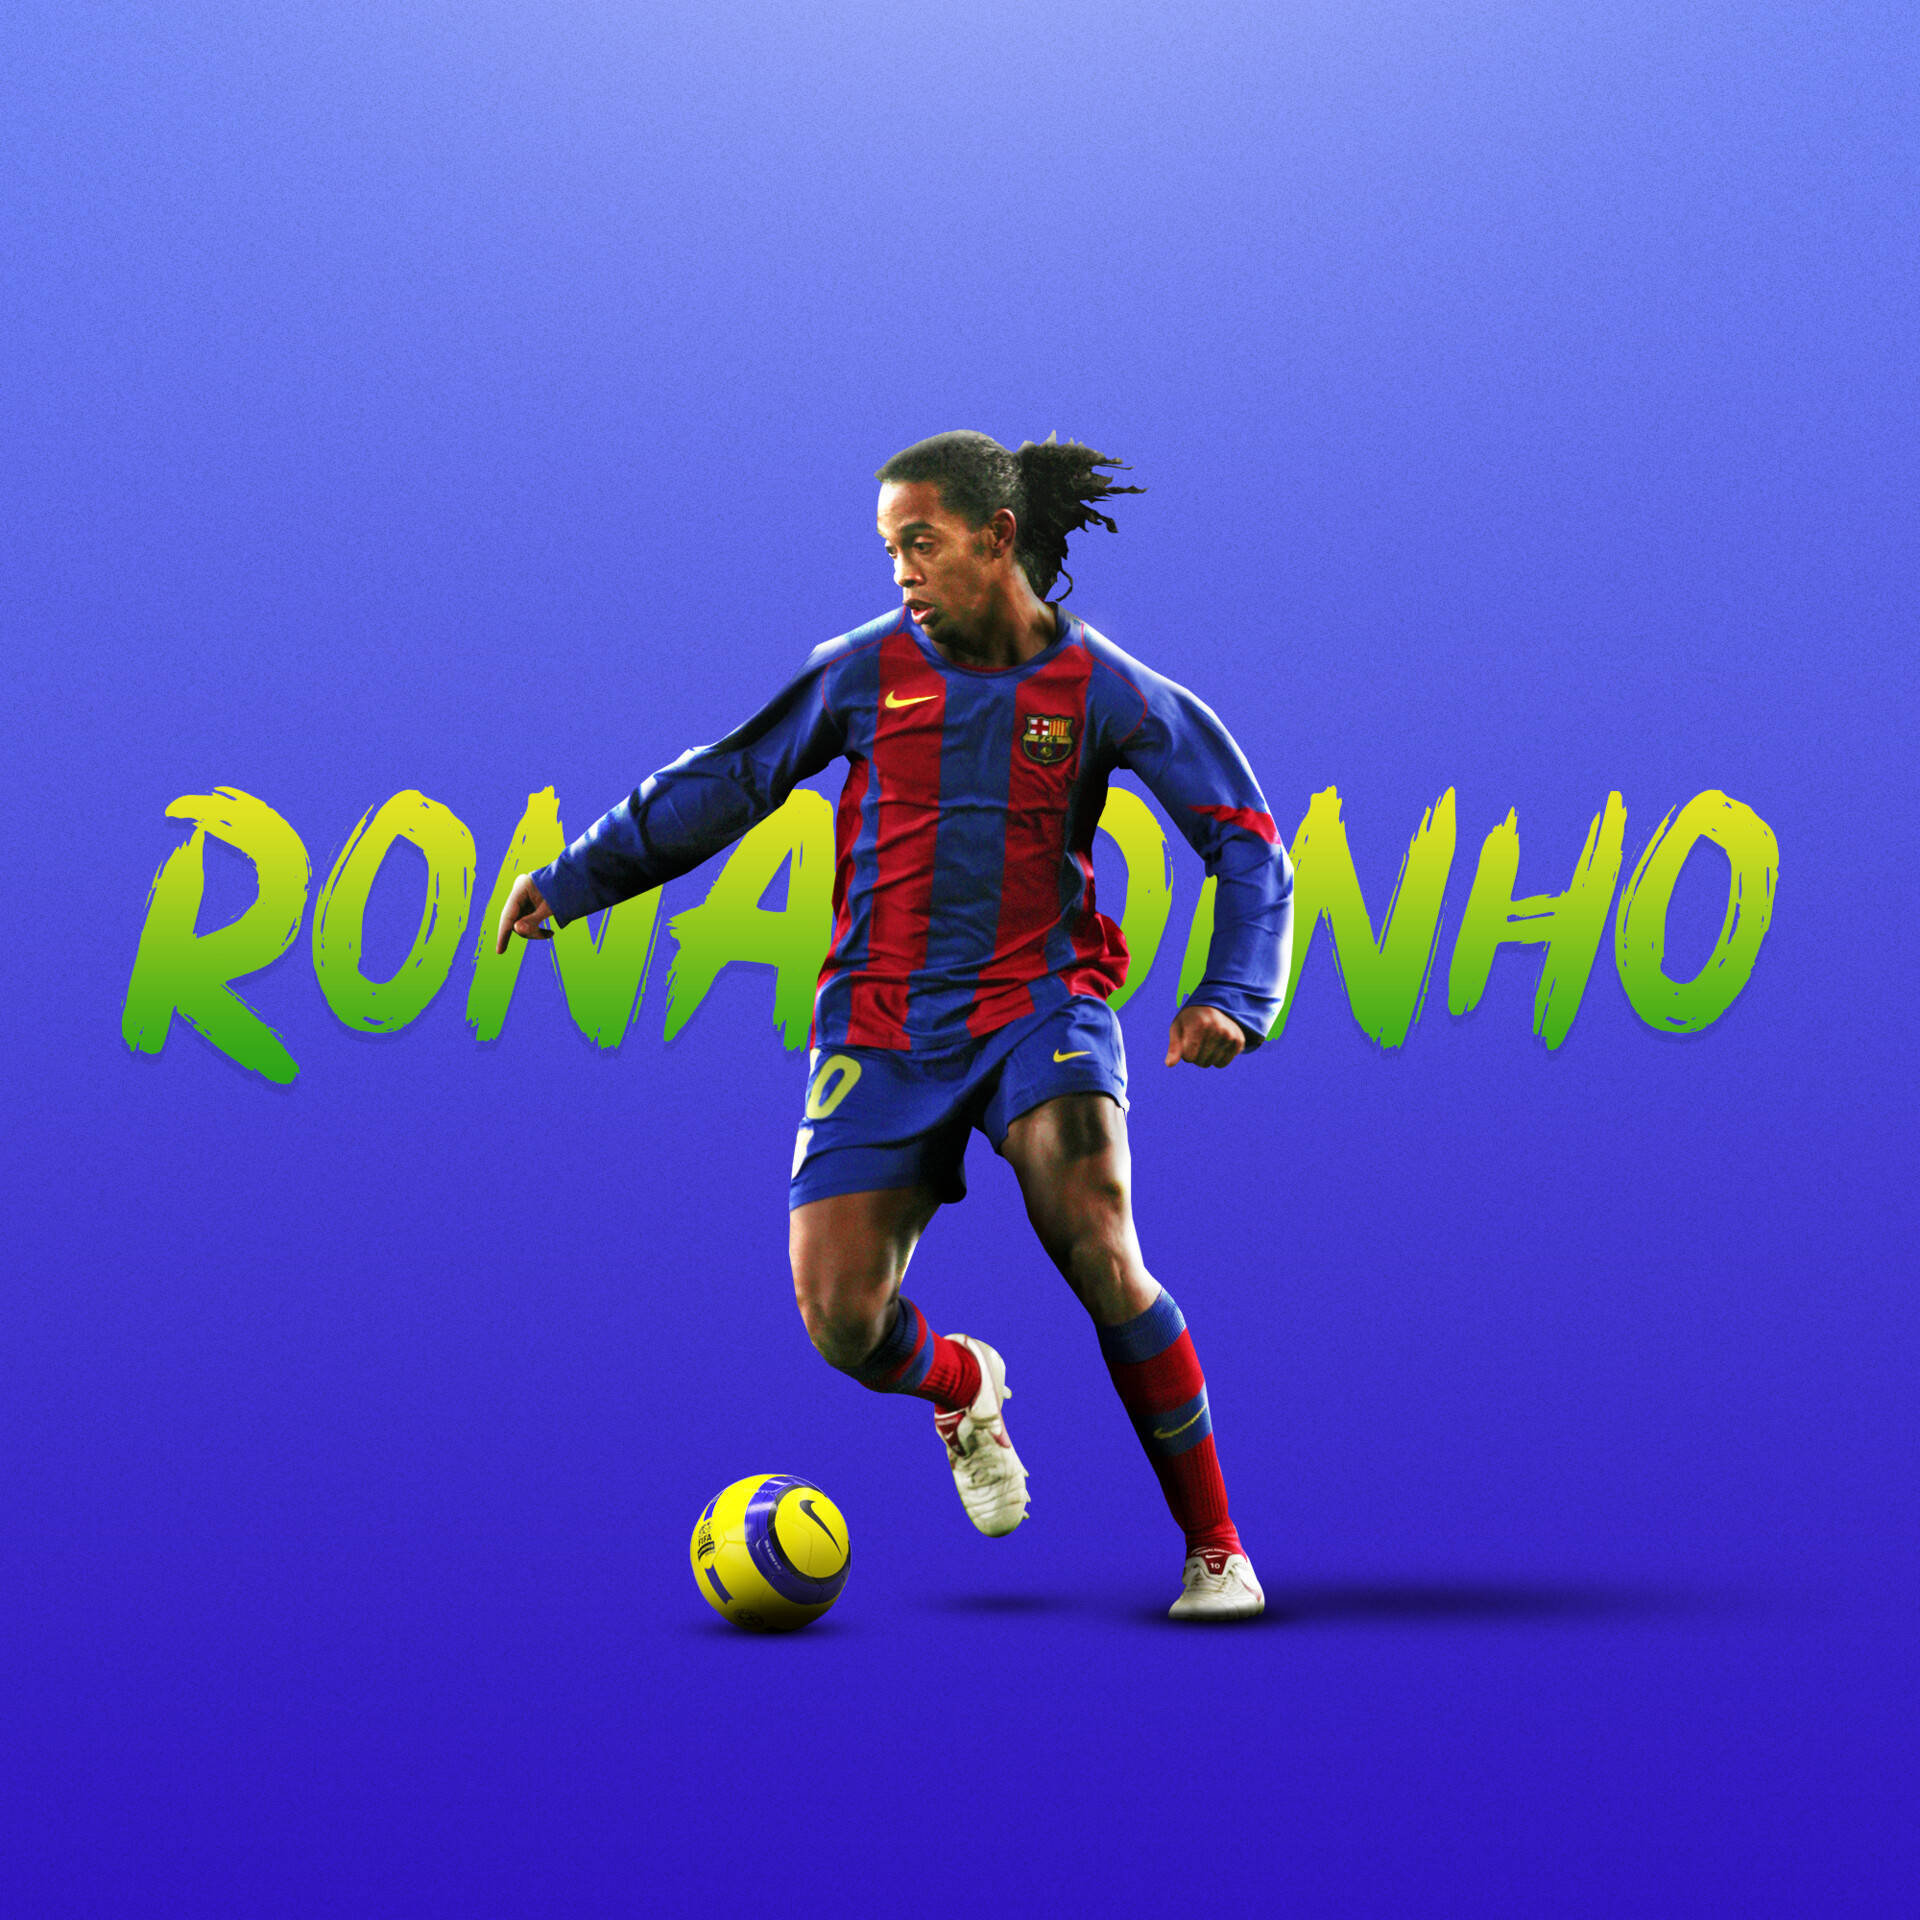 Ronaldinho  wallpaper  Fotos de ronaldinho Ronaldiño Fotos de fútbol